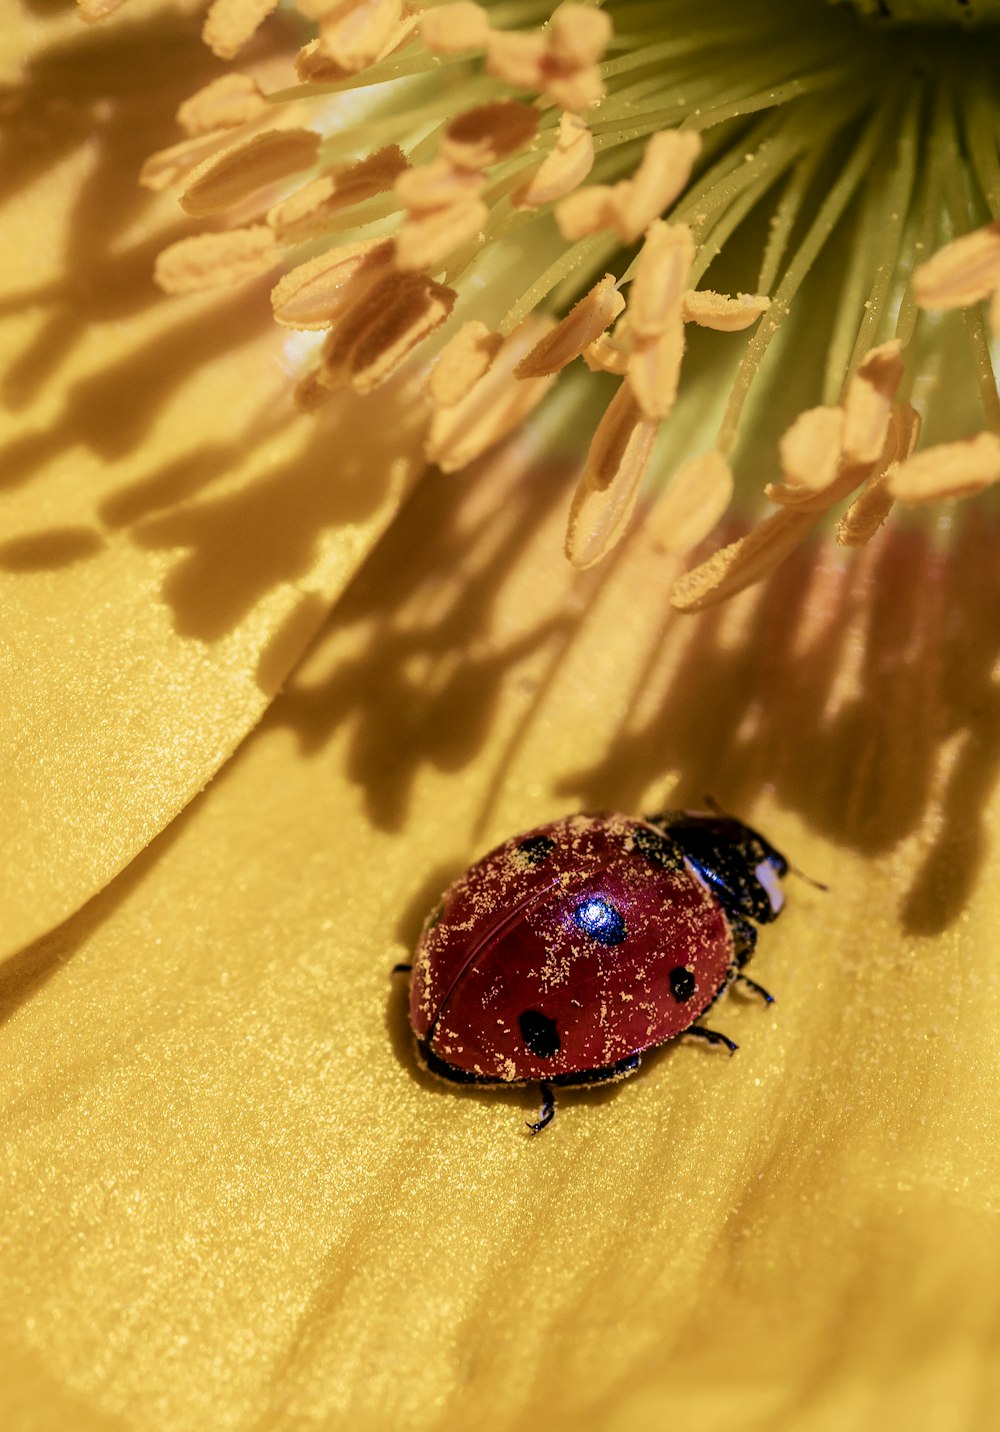 a ladybug on a plant